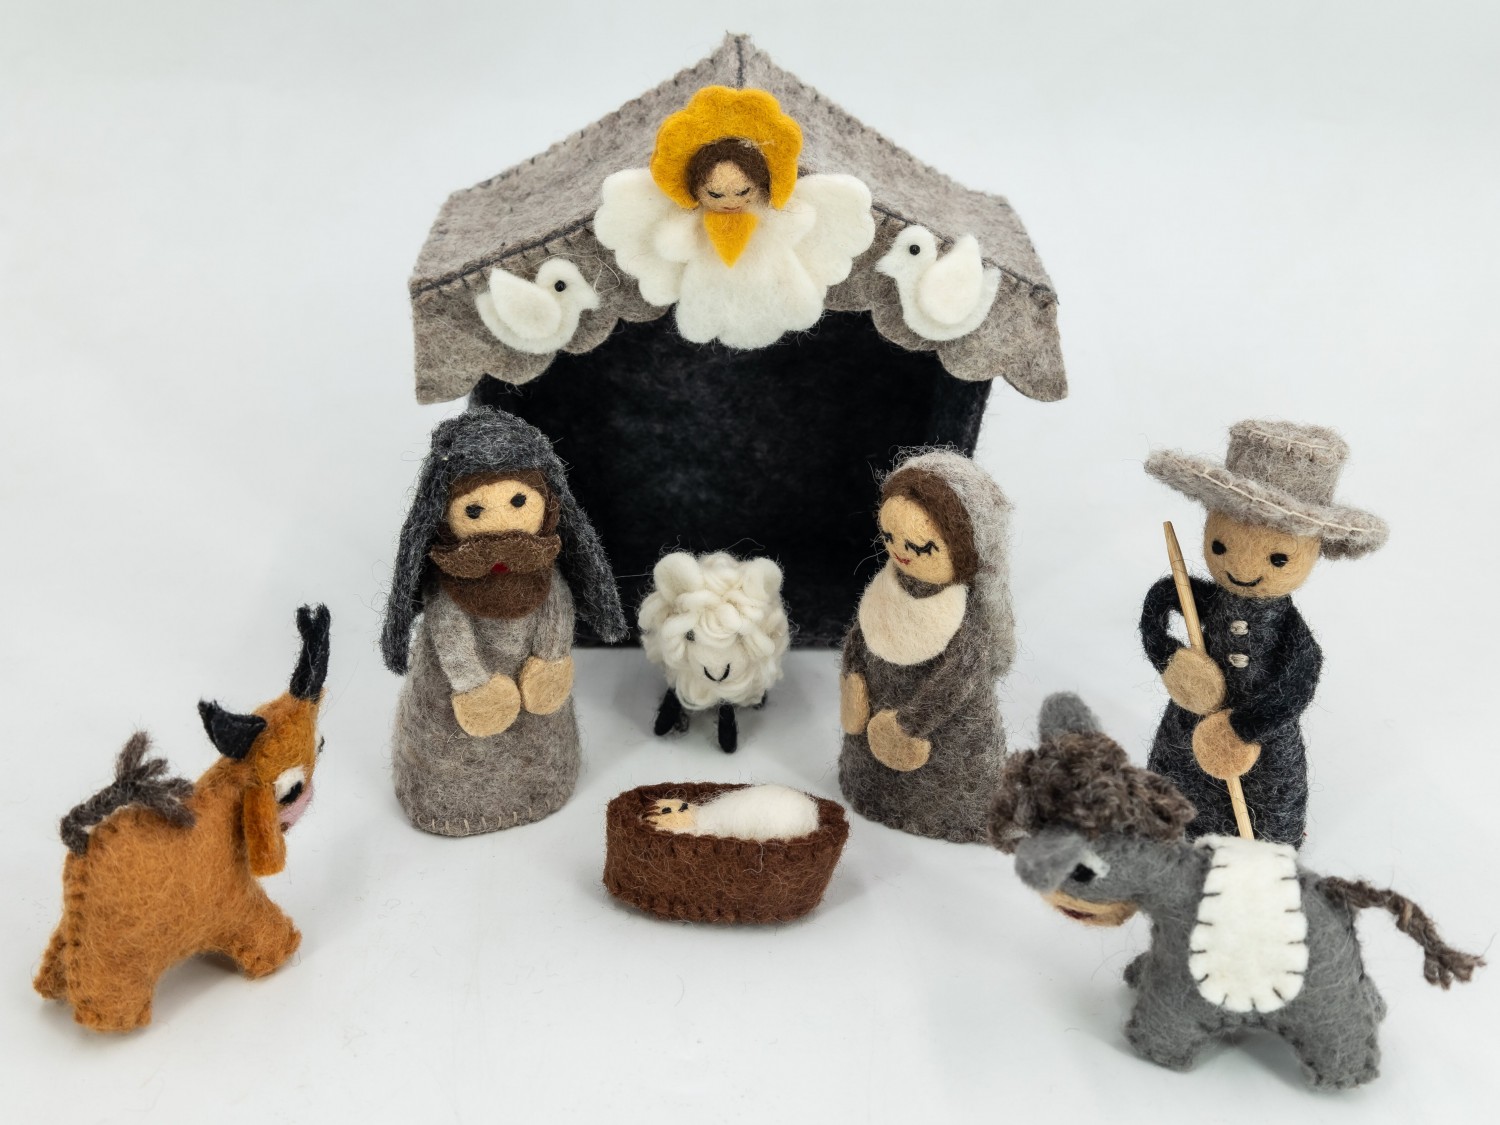 Felt Nativity Set